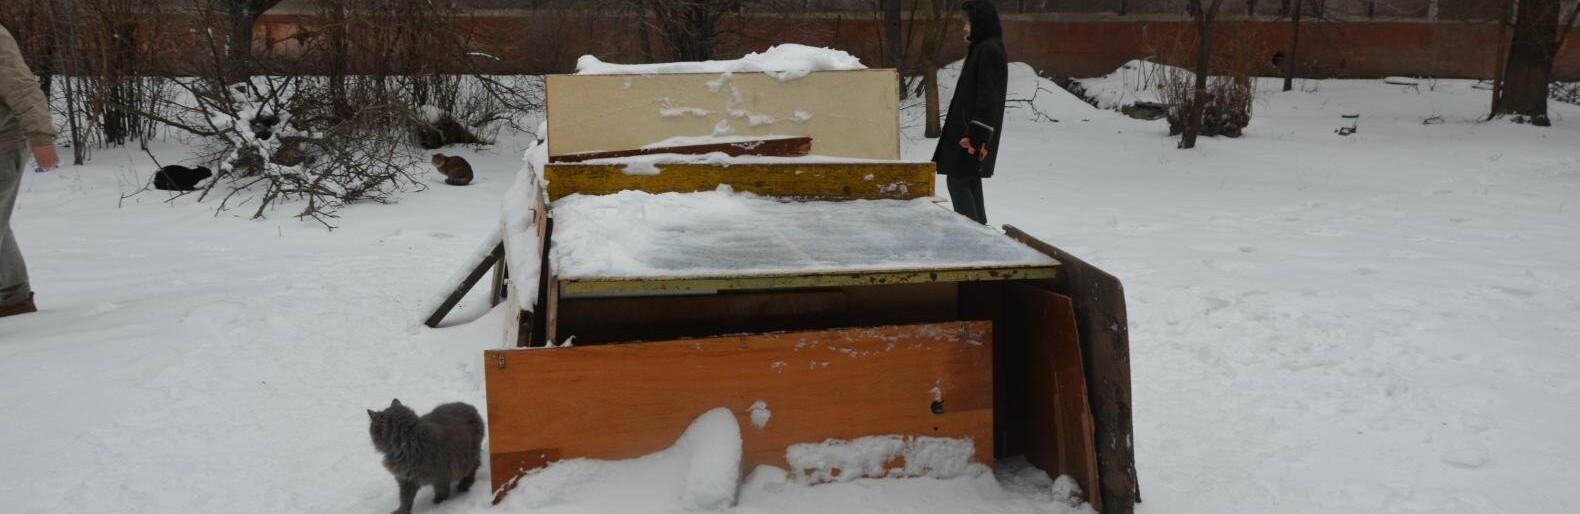 Статья Жители Мариуполя построили домик для бездомных котов из теннисного стола (фото) Утренний город. Крым